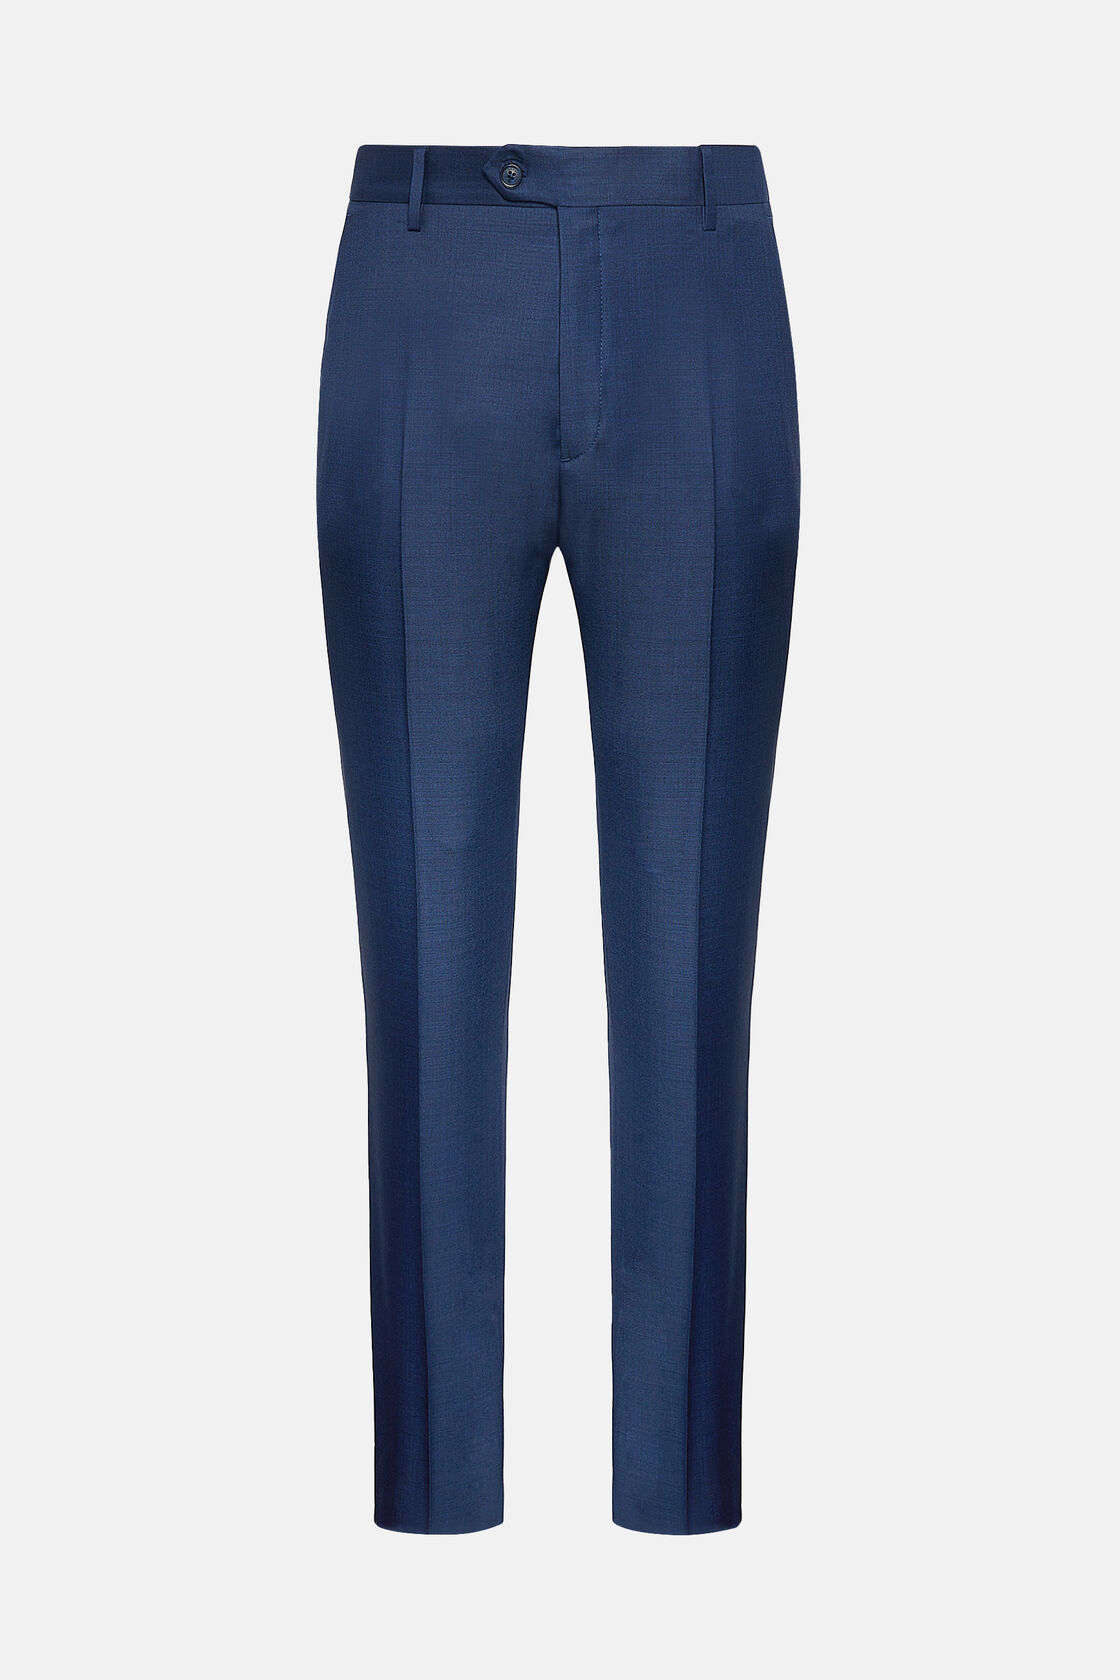 Pantalone Blu Grisaglia In Lana, Blu, hi-res